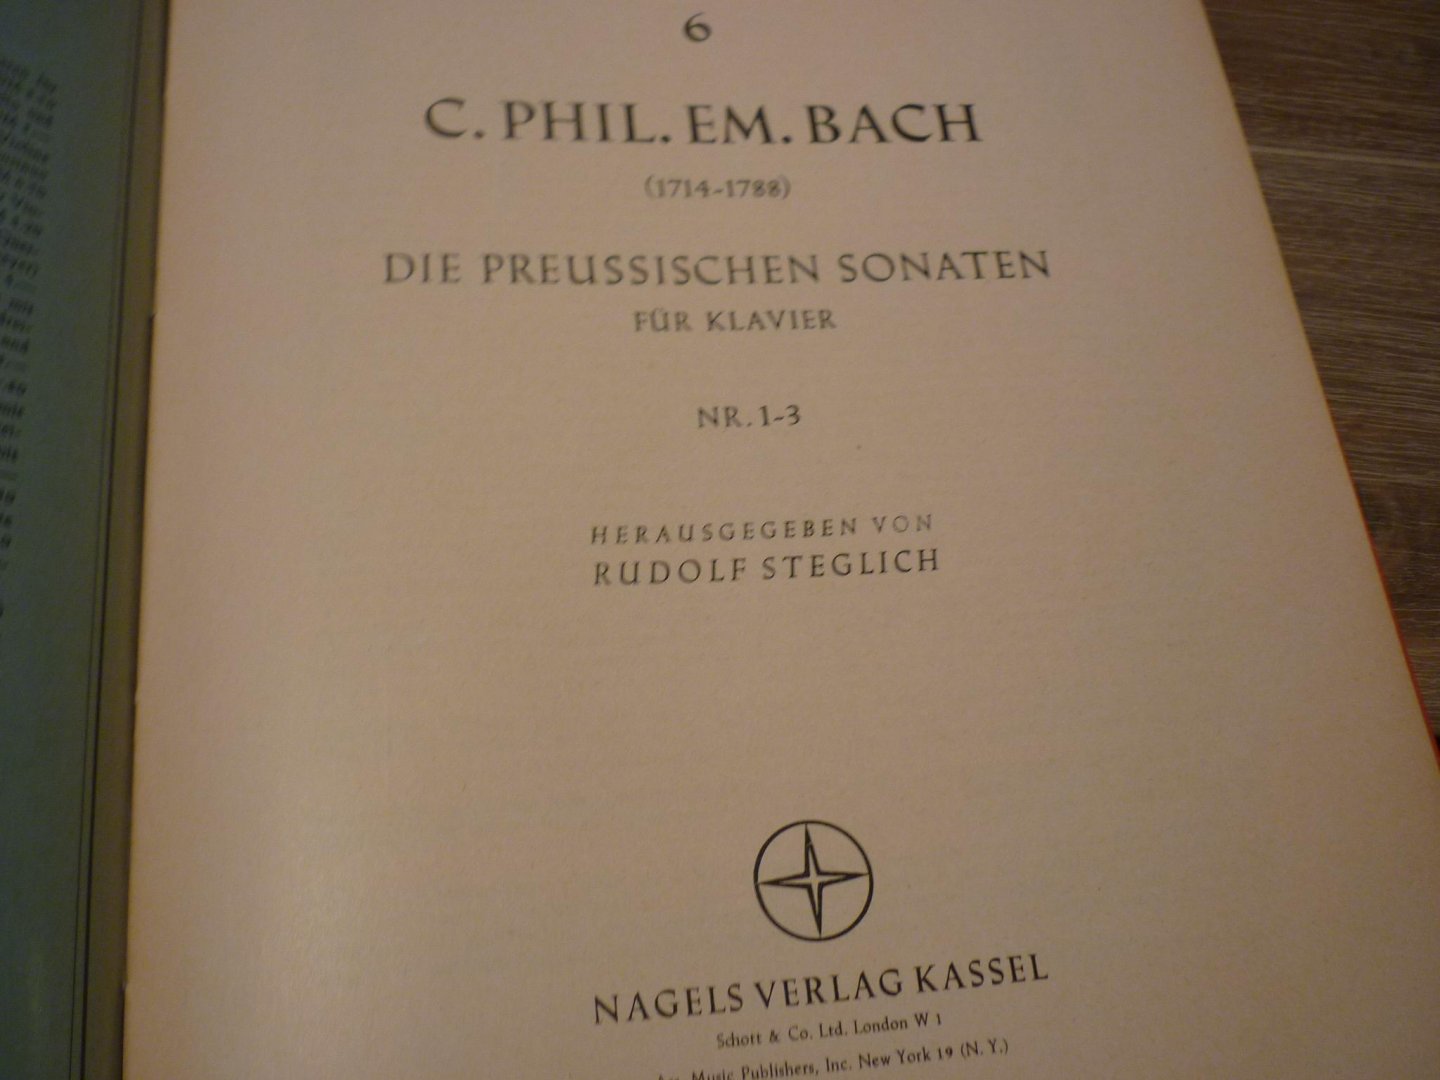 Bach; Carl Philipp Emanuel (1714 - 1788) - Die Preussischen Sonaten fur Klavier; No. 1-6  /  Die Wurttembergischen Sonaten fur Klavier; No. 1-6